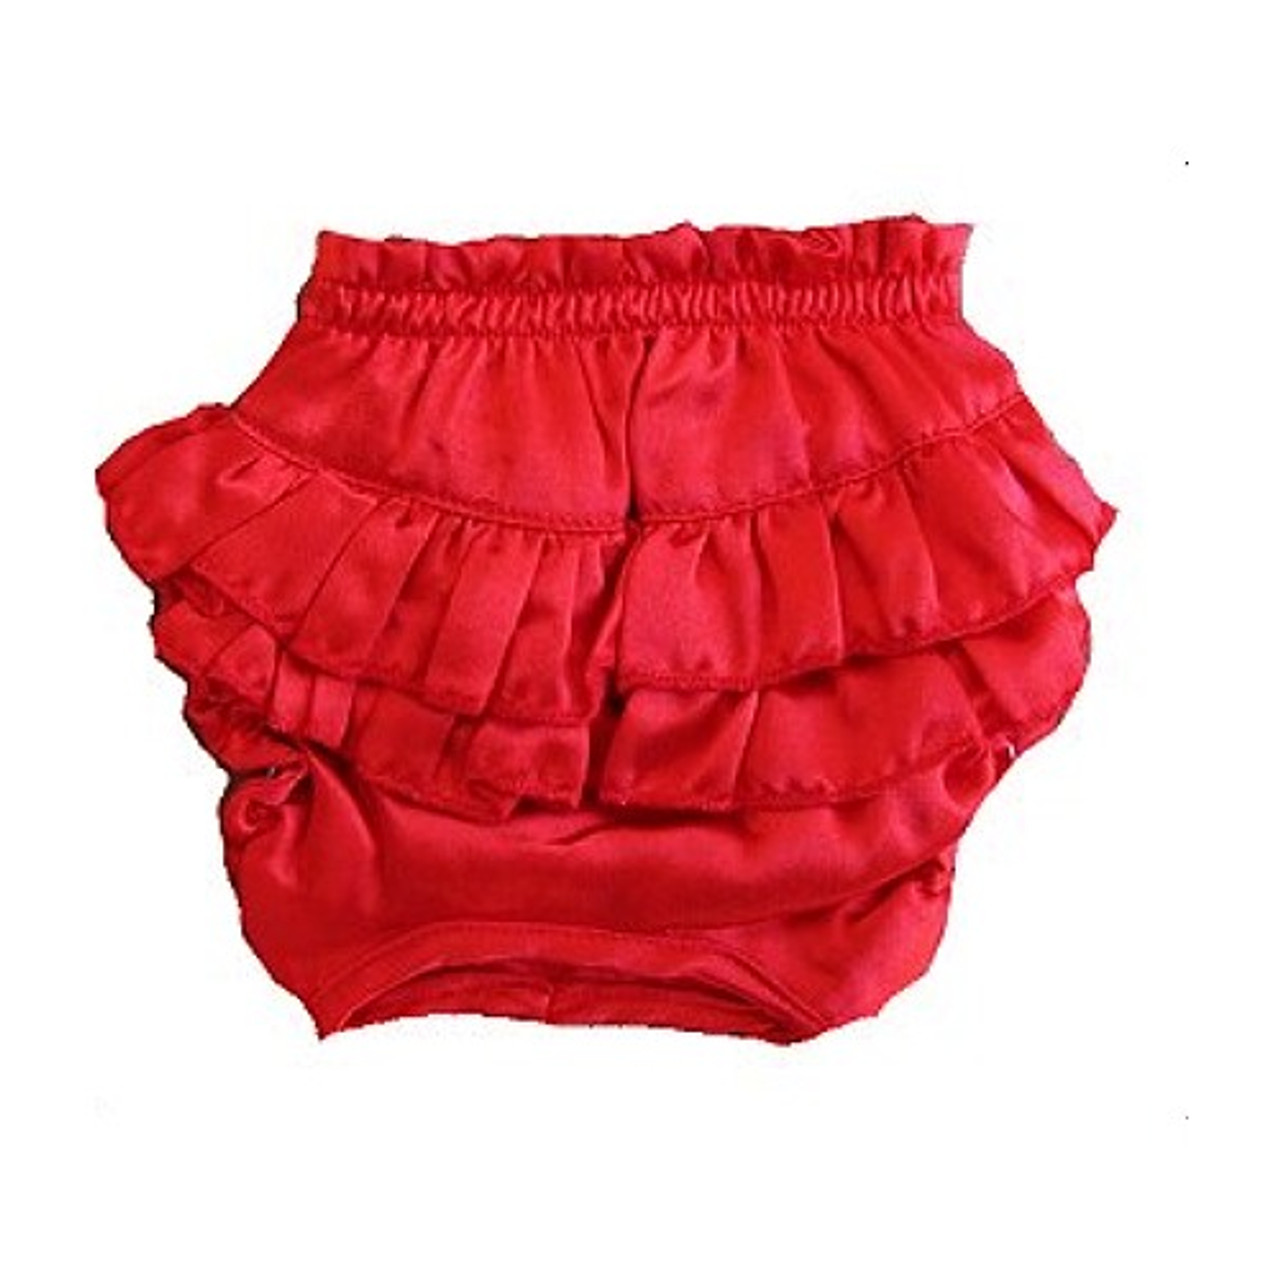 Red Satin Ruffle Dog Panties (Large)